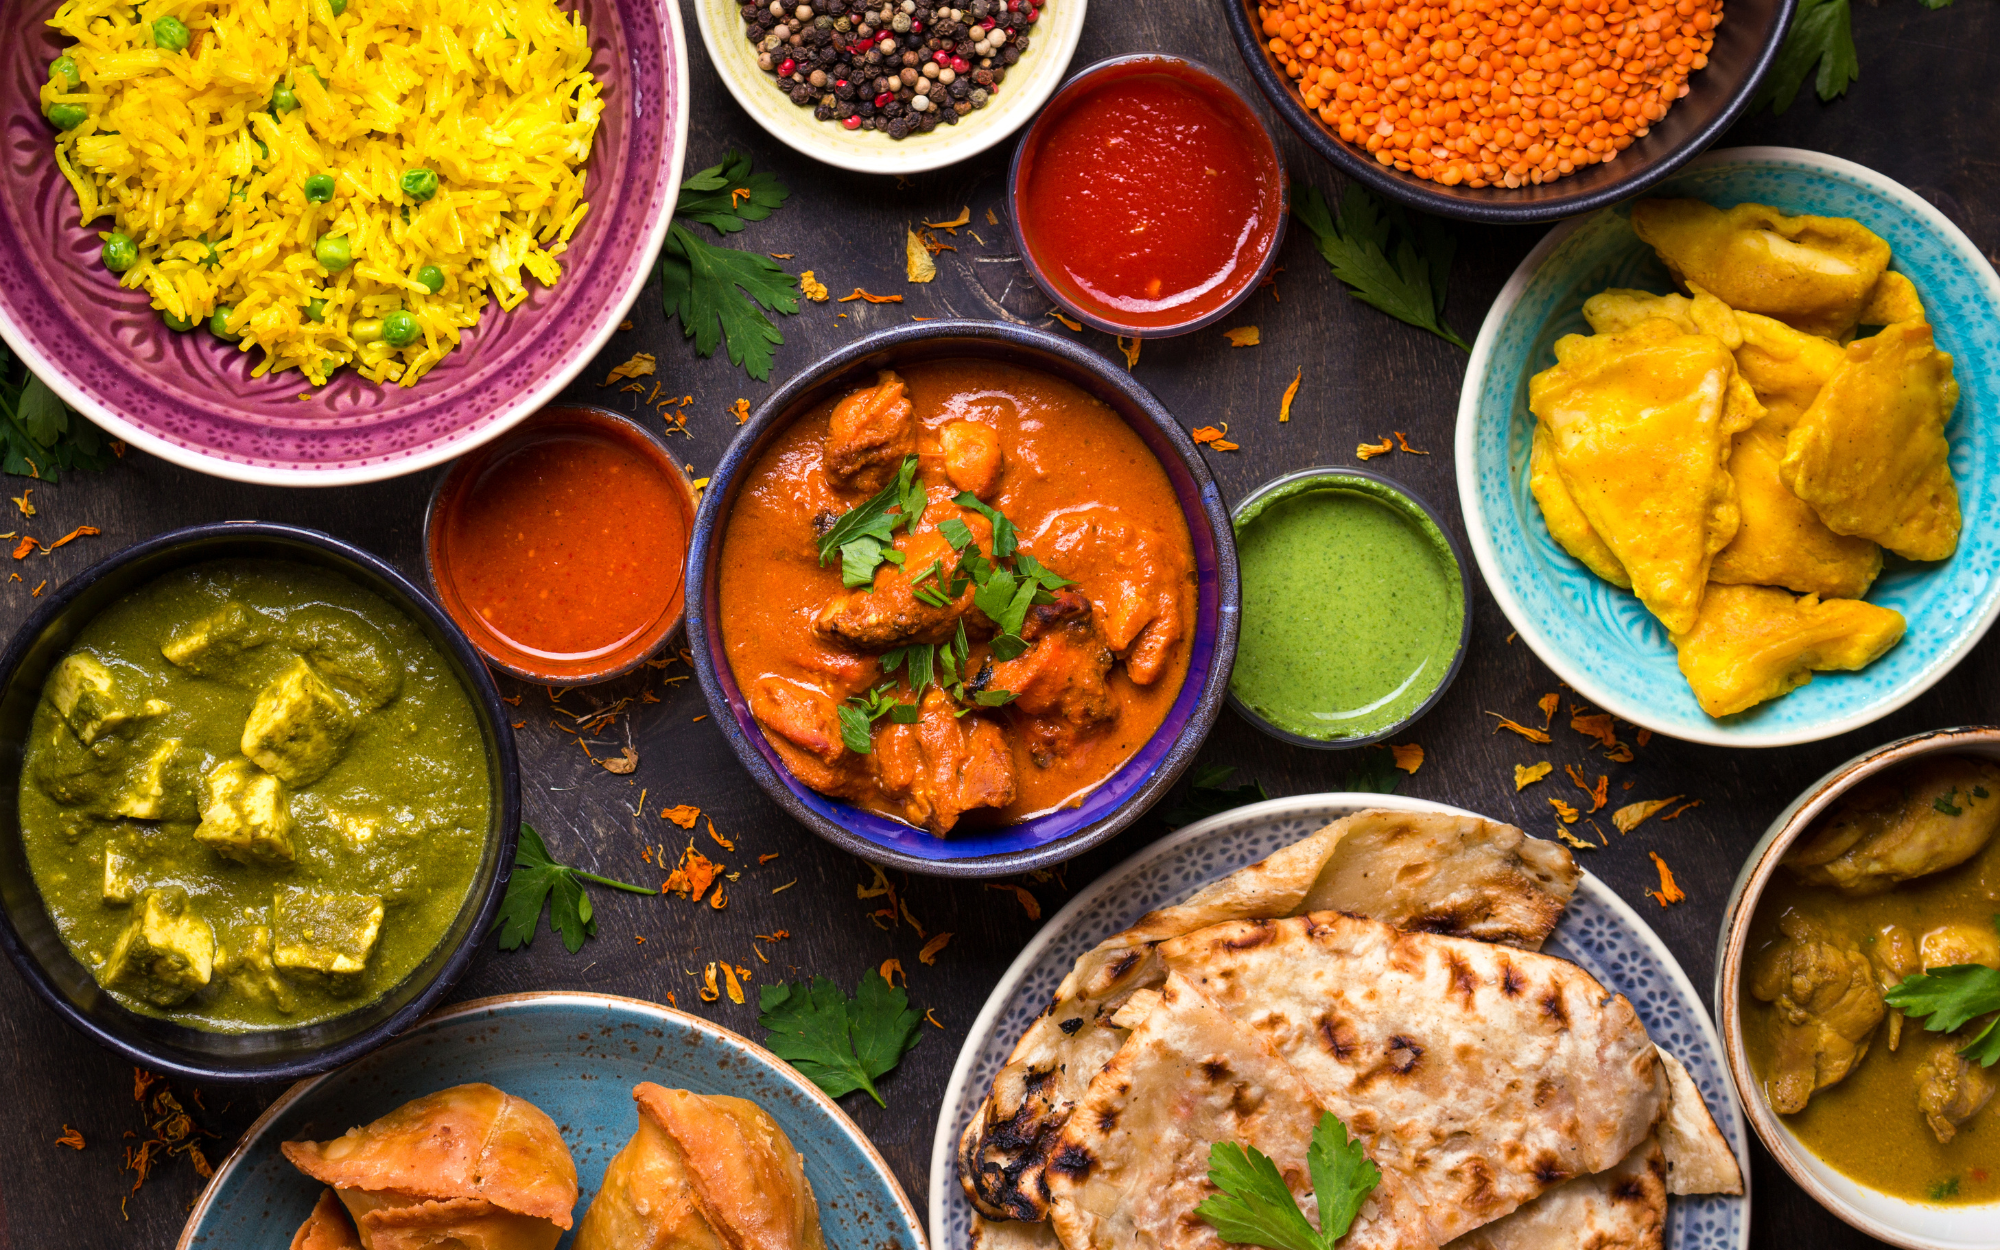 7 món ăn đặc trưng nhất định phải thử khi du lịch Ấn Độ